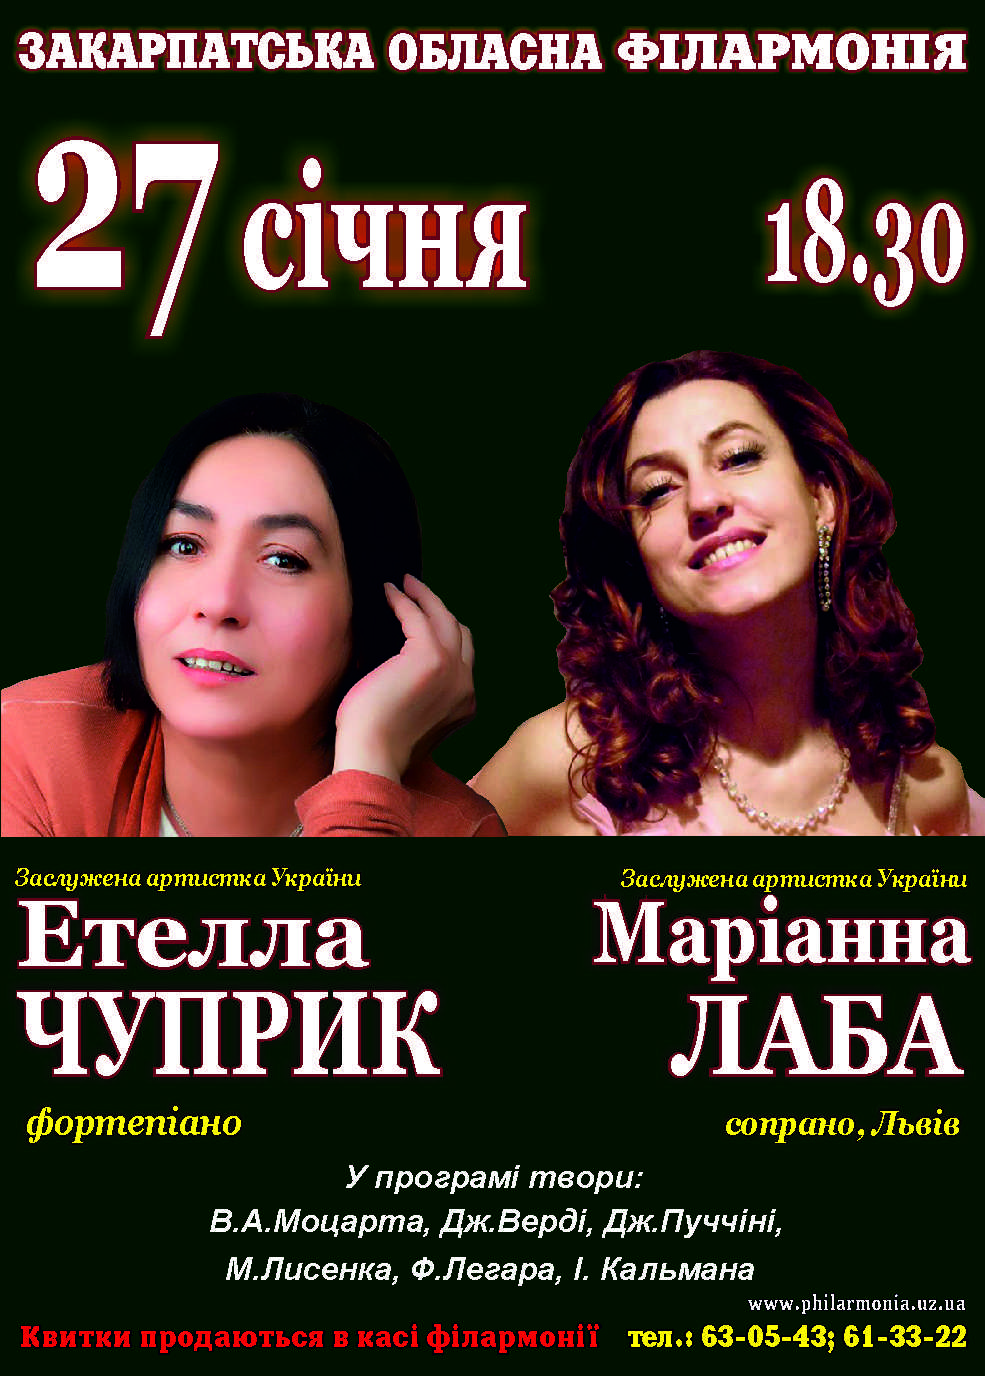 27 січня о 18.30 у Закарпатській обласній філармонії на одній сцені виступлять дві яскраві виконавиці, наші землячки, заслужені артистки України Етелла Чуприк (фортепіано) та Маріанна Лаба (сопрано).